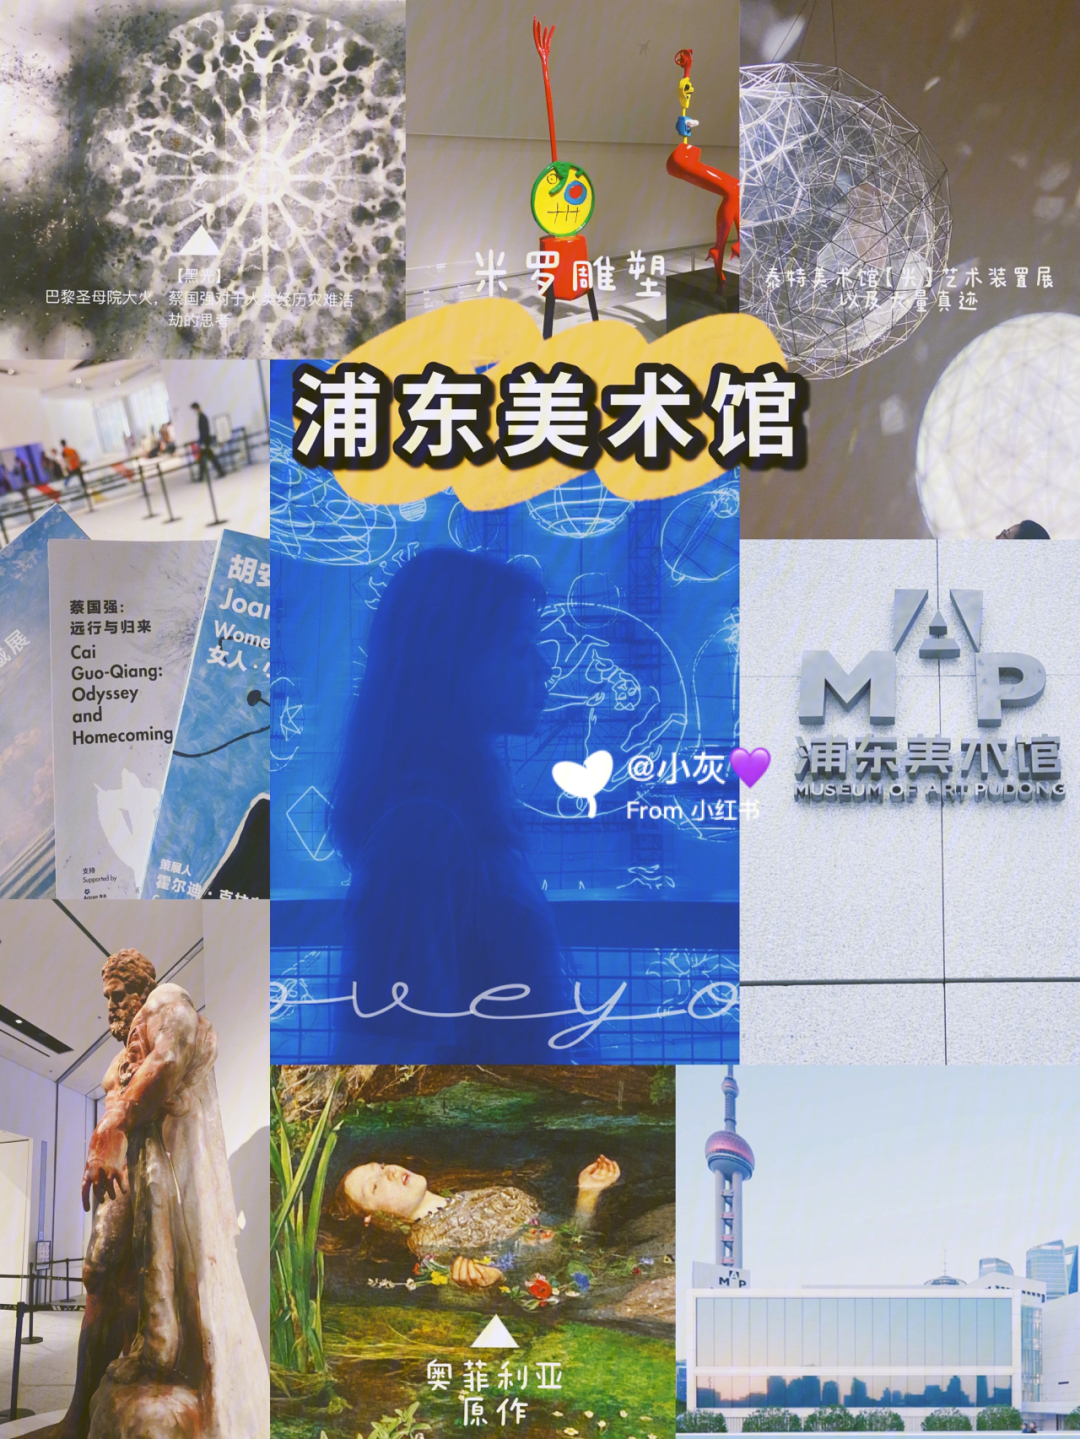 上海浦东美术馆门票图片